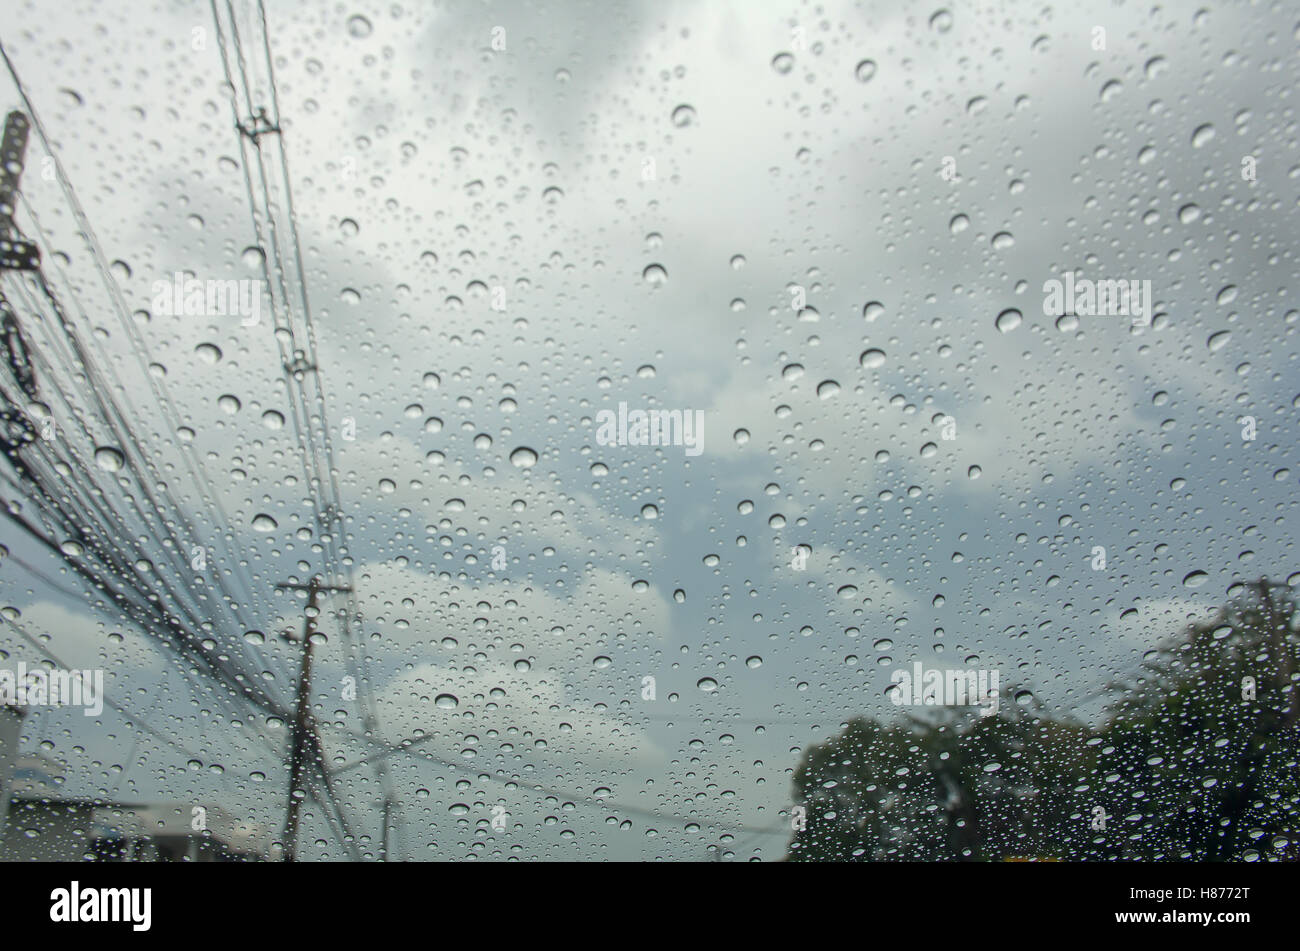 La lluvia caída en el coche de cristal con poste eléctrico y nubes en el cielo Foto de stock